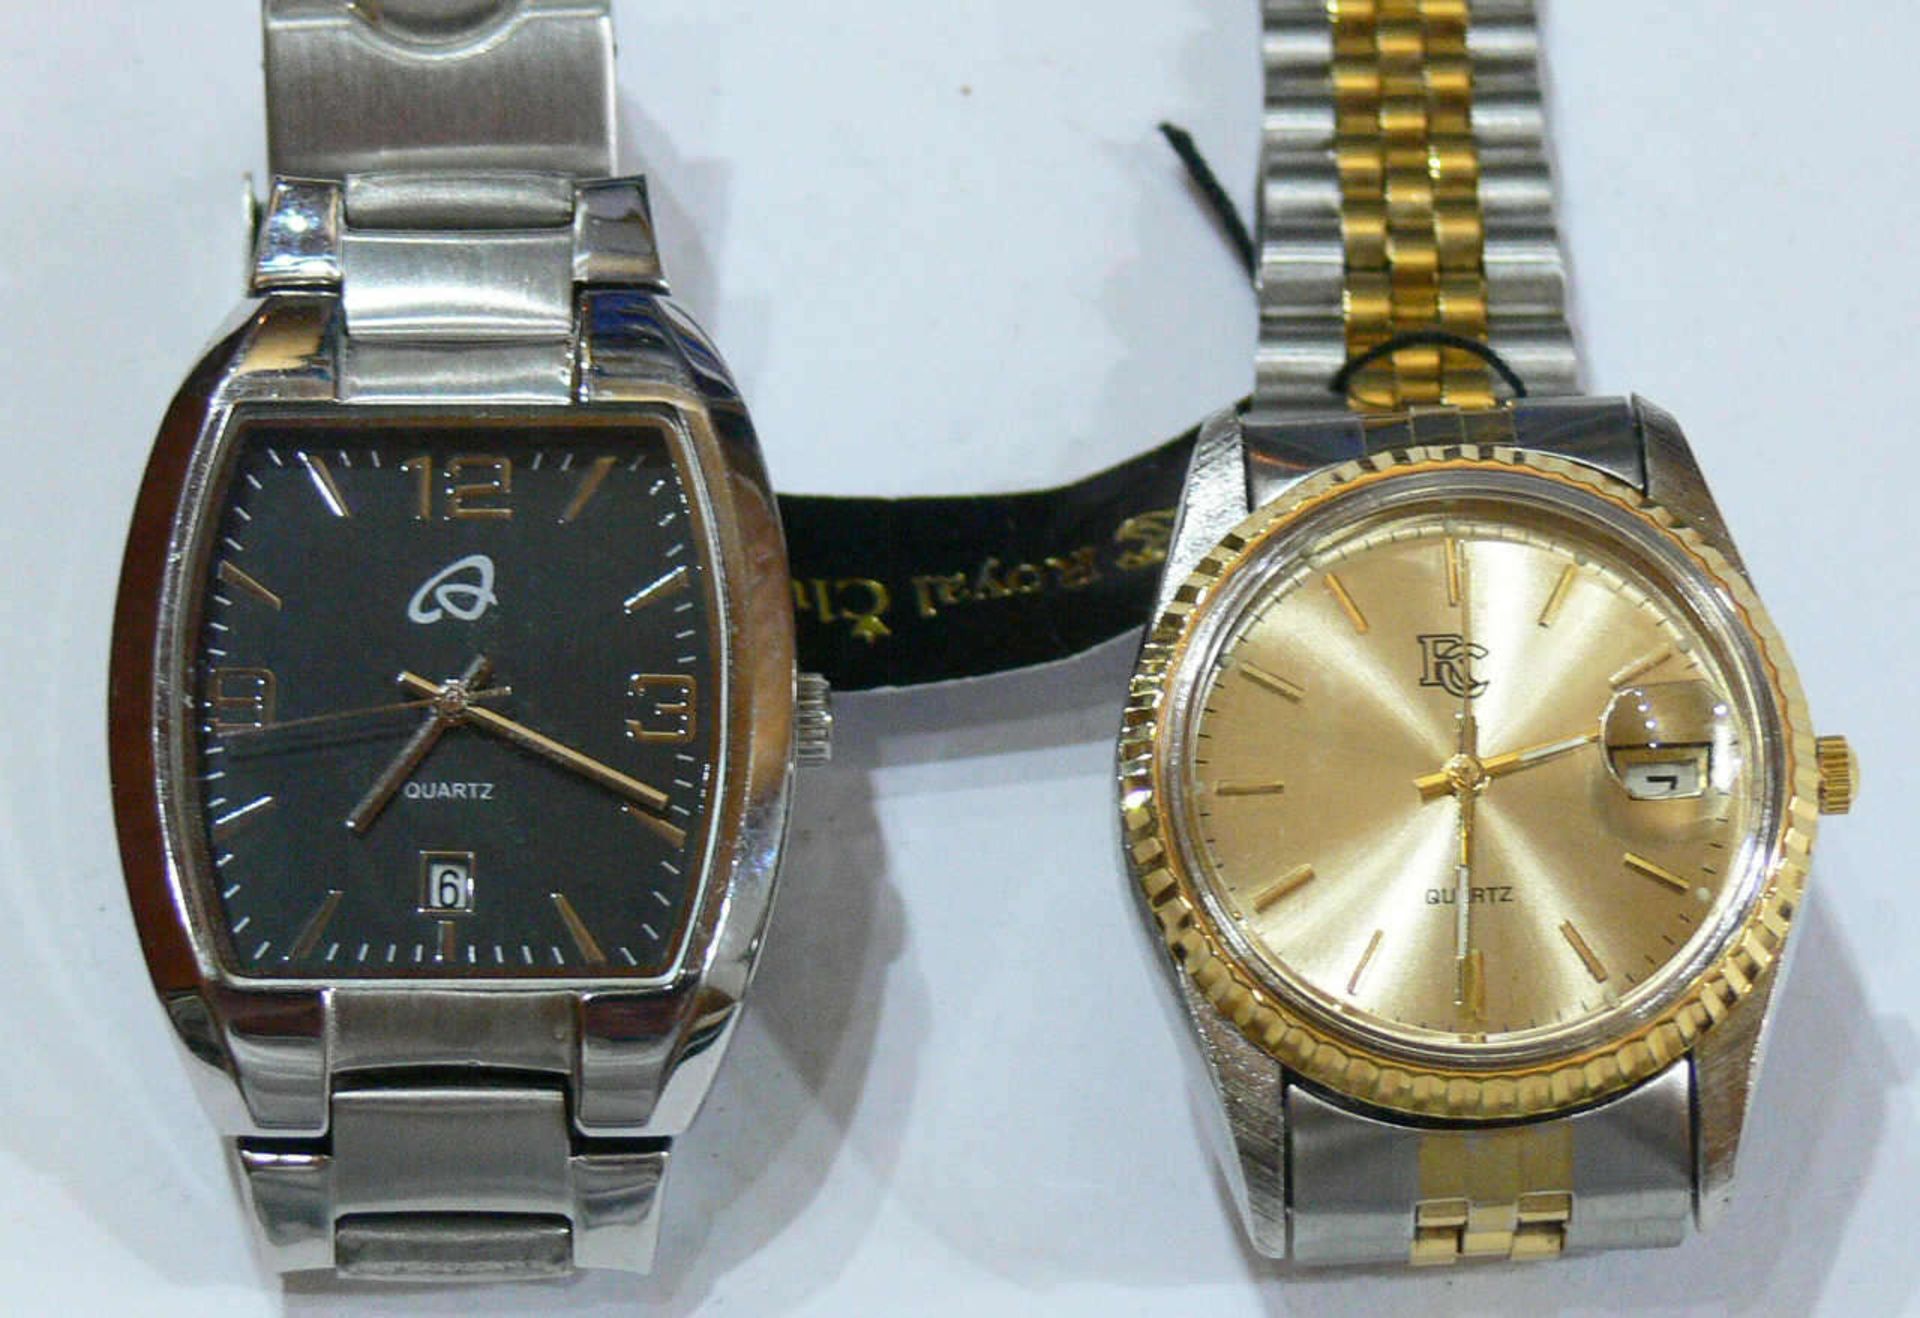 Zwei Herren - Armbanduhren, Quarz, 1 x Royal Club, Bicolor - Metallarmband, goldenes Ziffernblatt, - Bild 2 aus 2